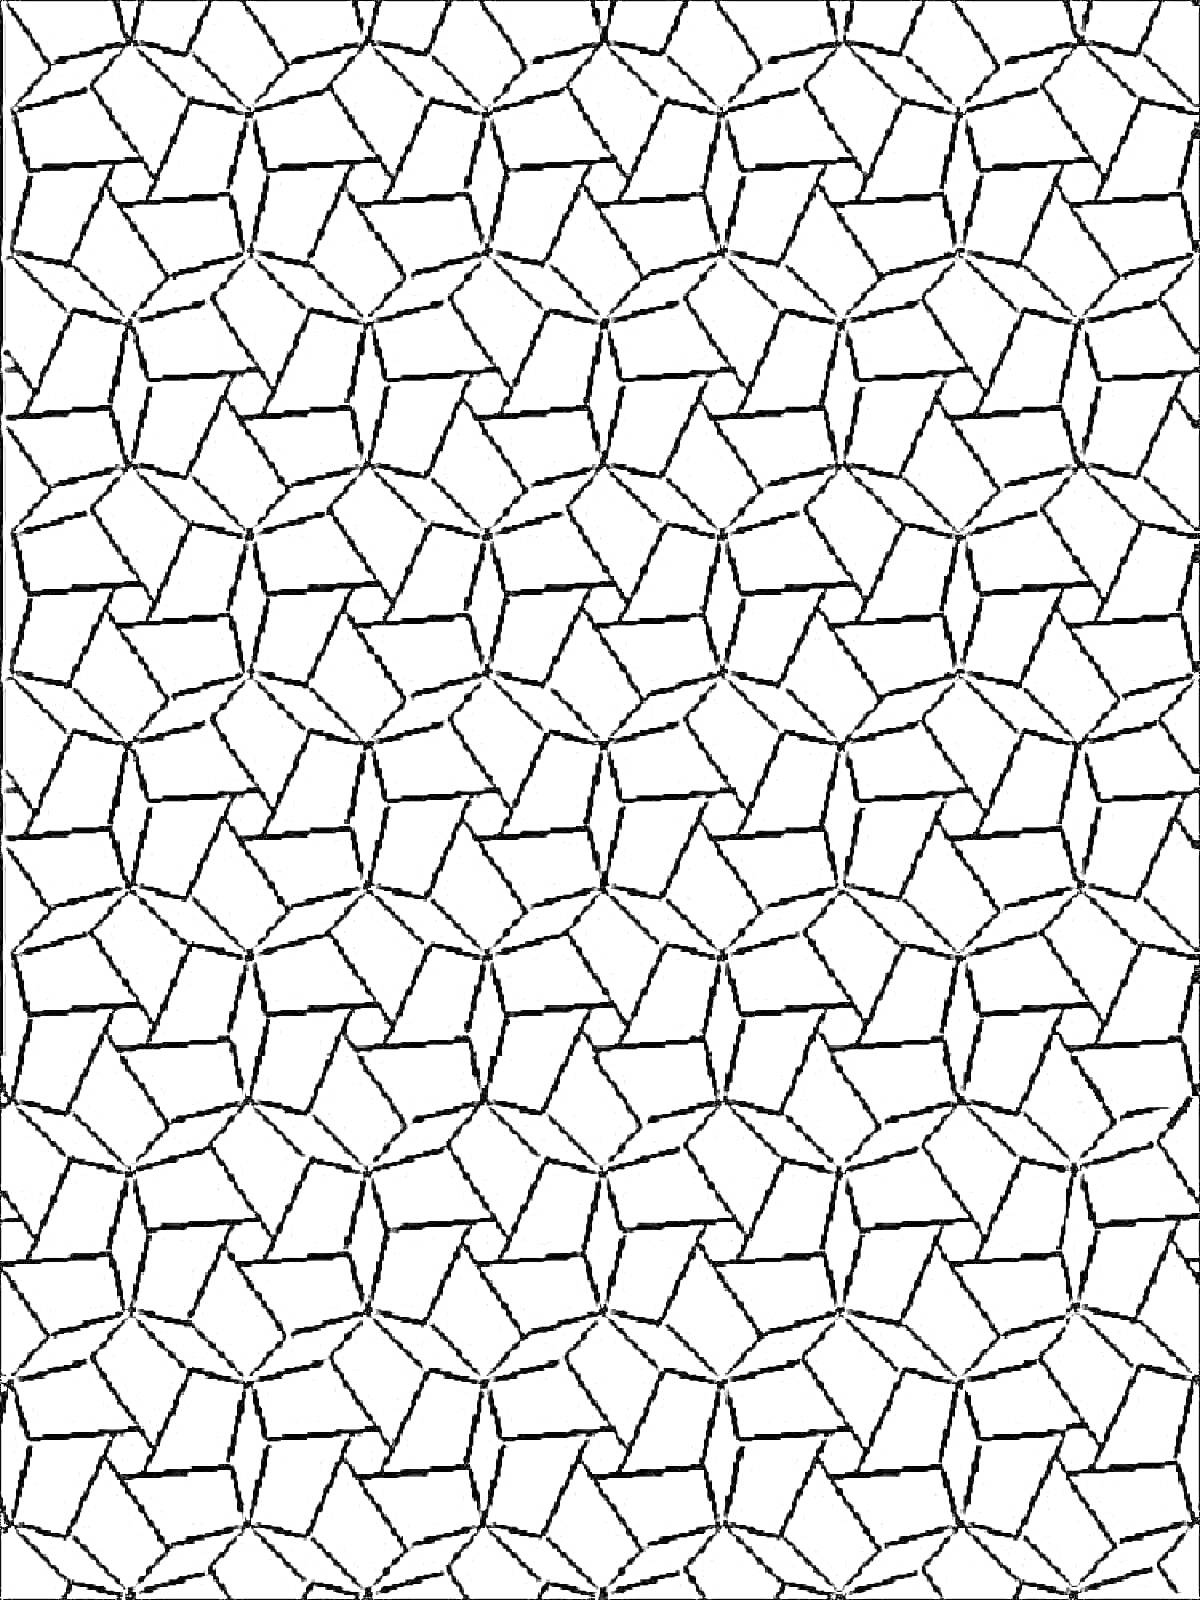 геометрическая мозаика из шестиугольников и пятиугольников